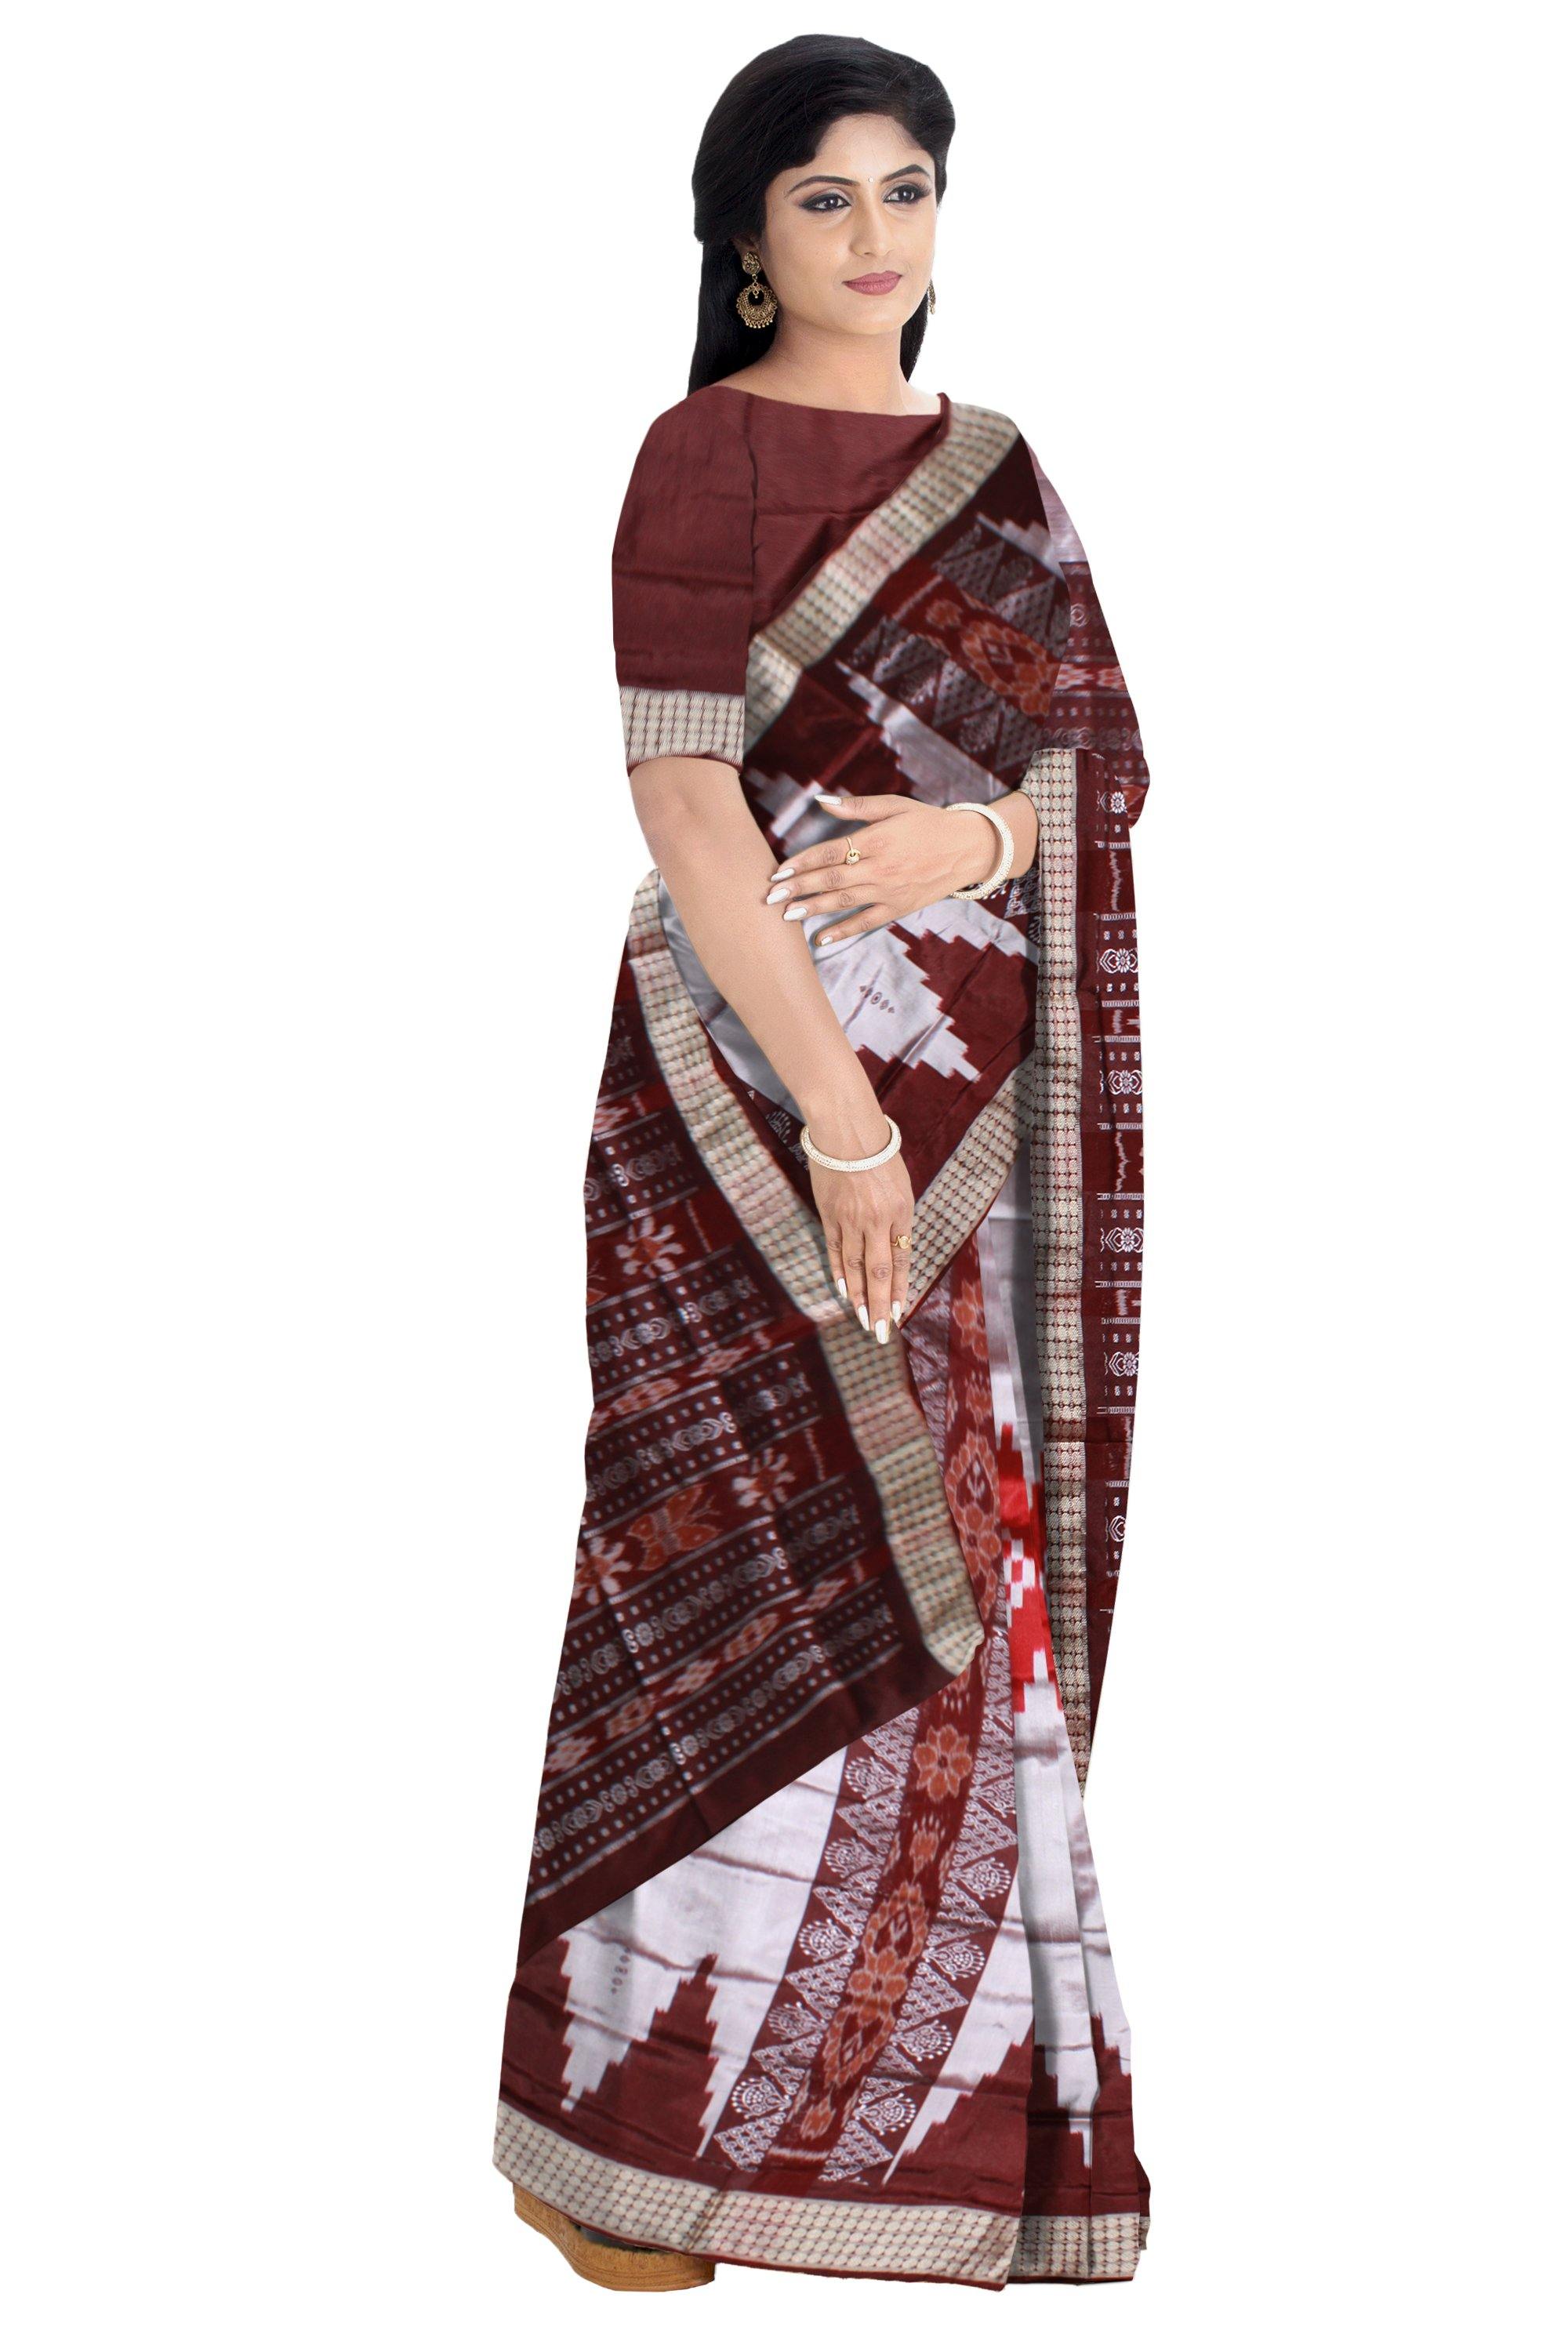 Gray color sapta design pata saree. With blouse piece - Koshali Arts & Crafts Enterprise